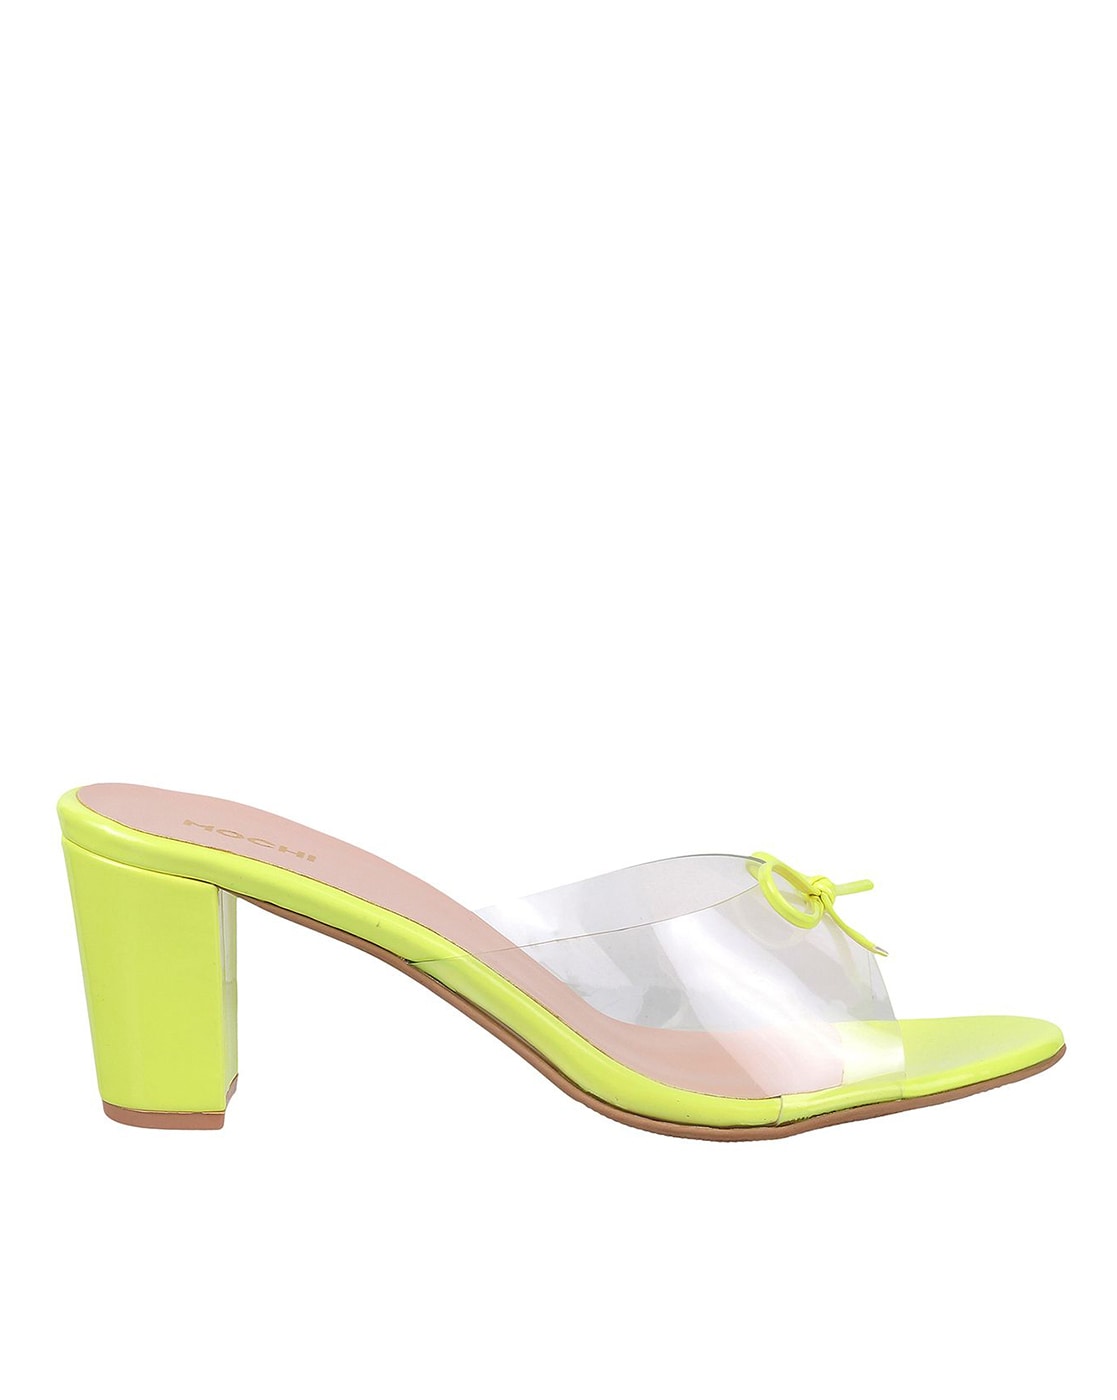 Buy Mochi Women Yellow Casual Sandals Online | SKU: 40-86-33-36 – Mochi  Shoes